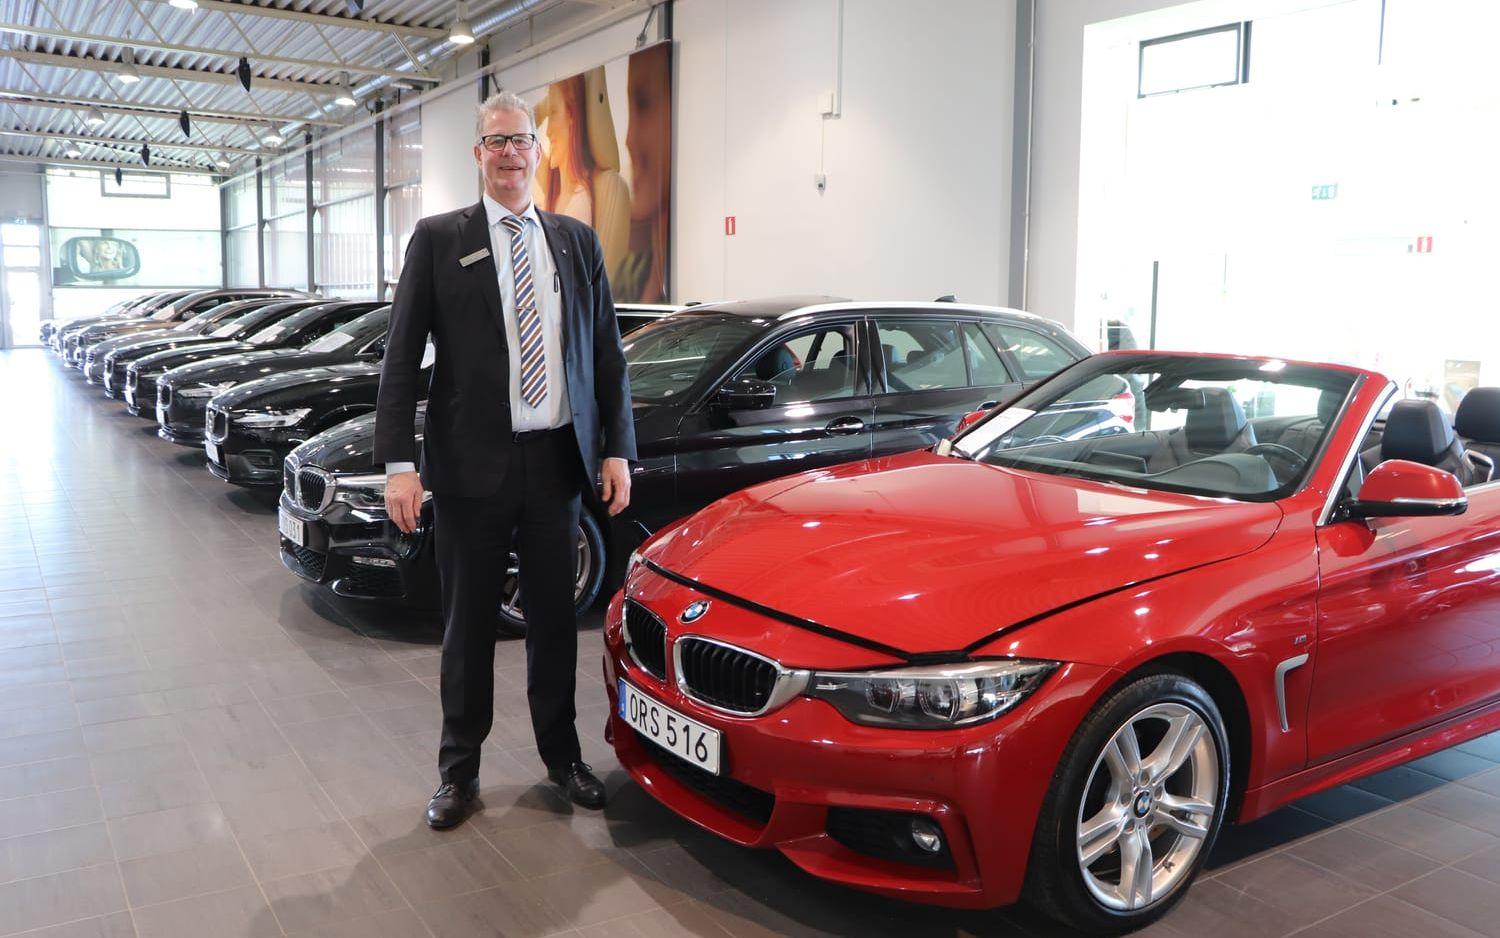 Rolf Hackzell på BMW:s avdelning på Bilia i Kungsbacka ser en prisökning över hela skalan på begagnat. Från äldre  till nyare bilar. 